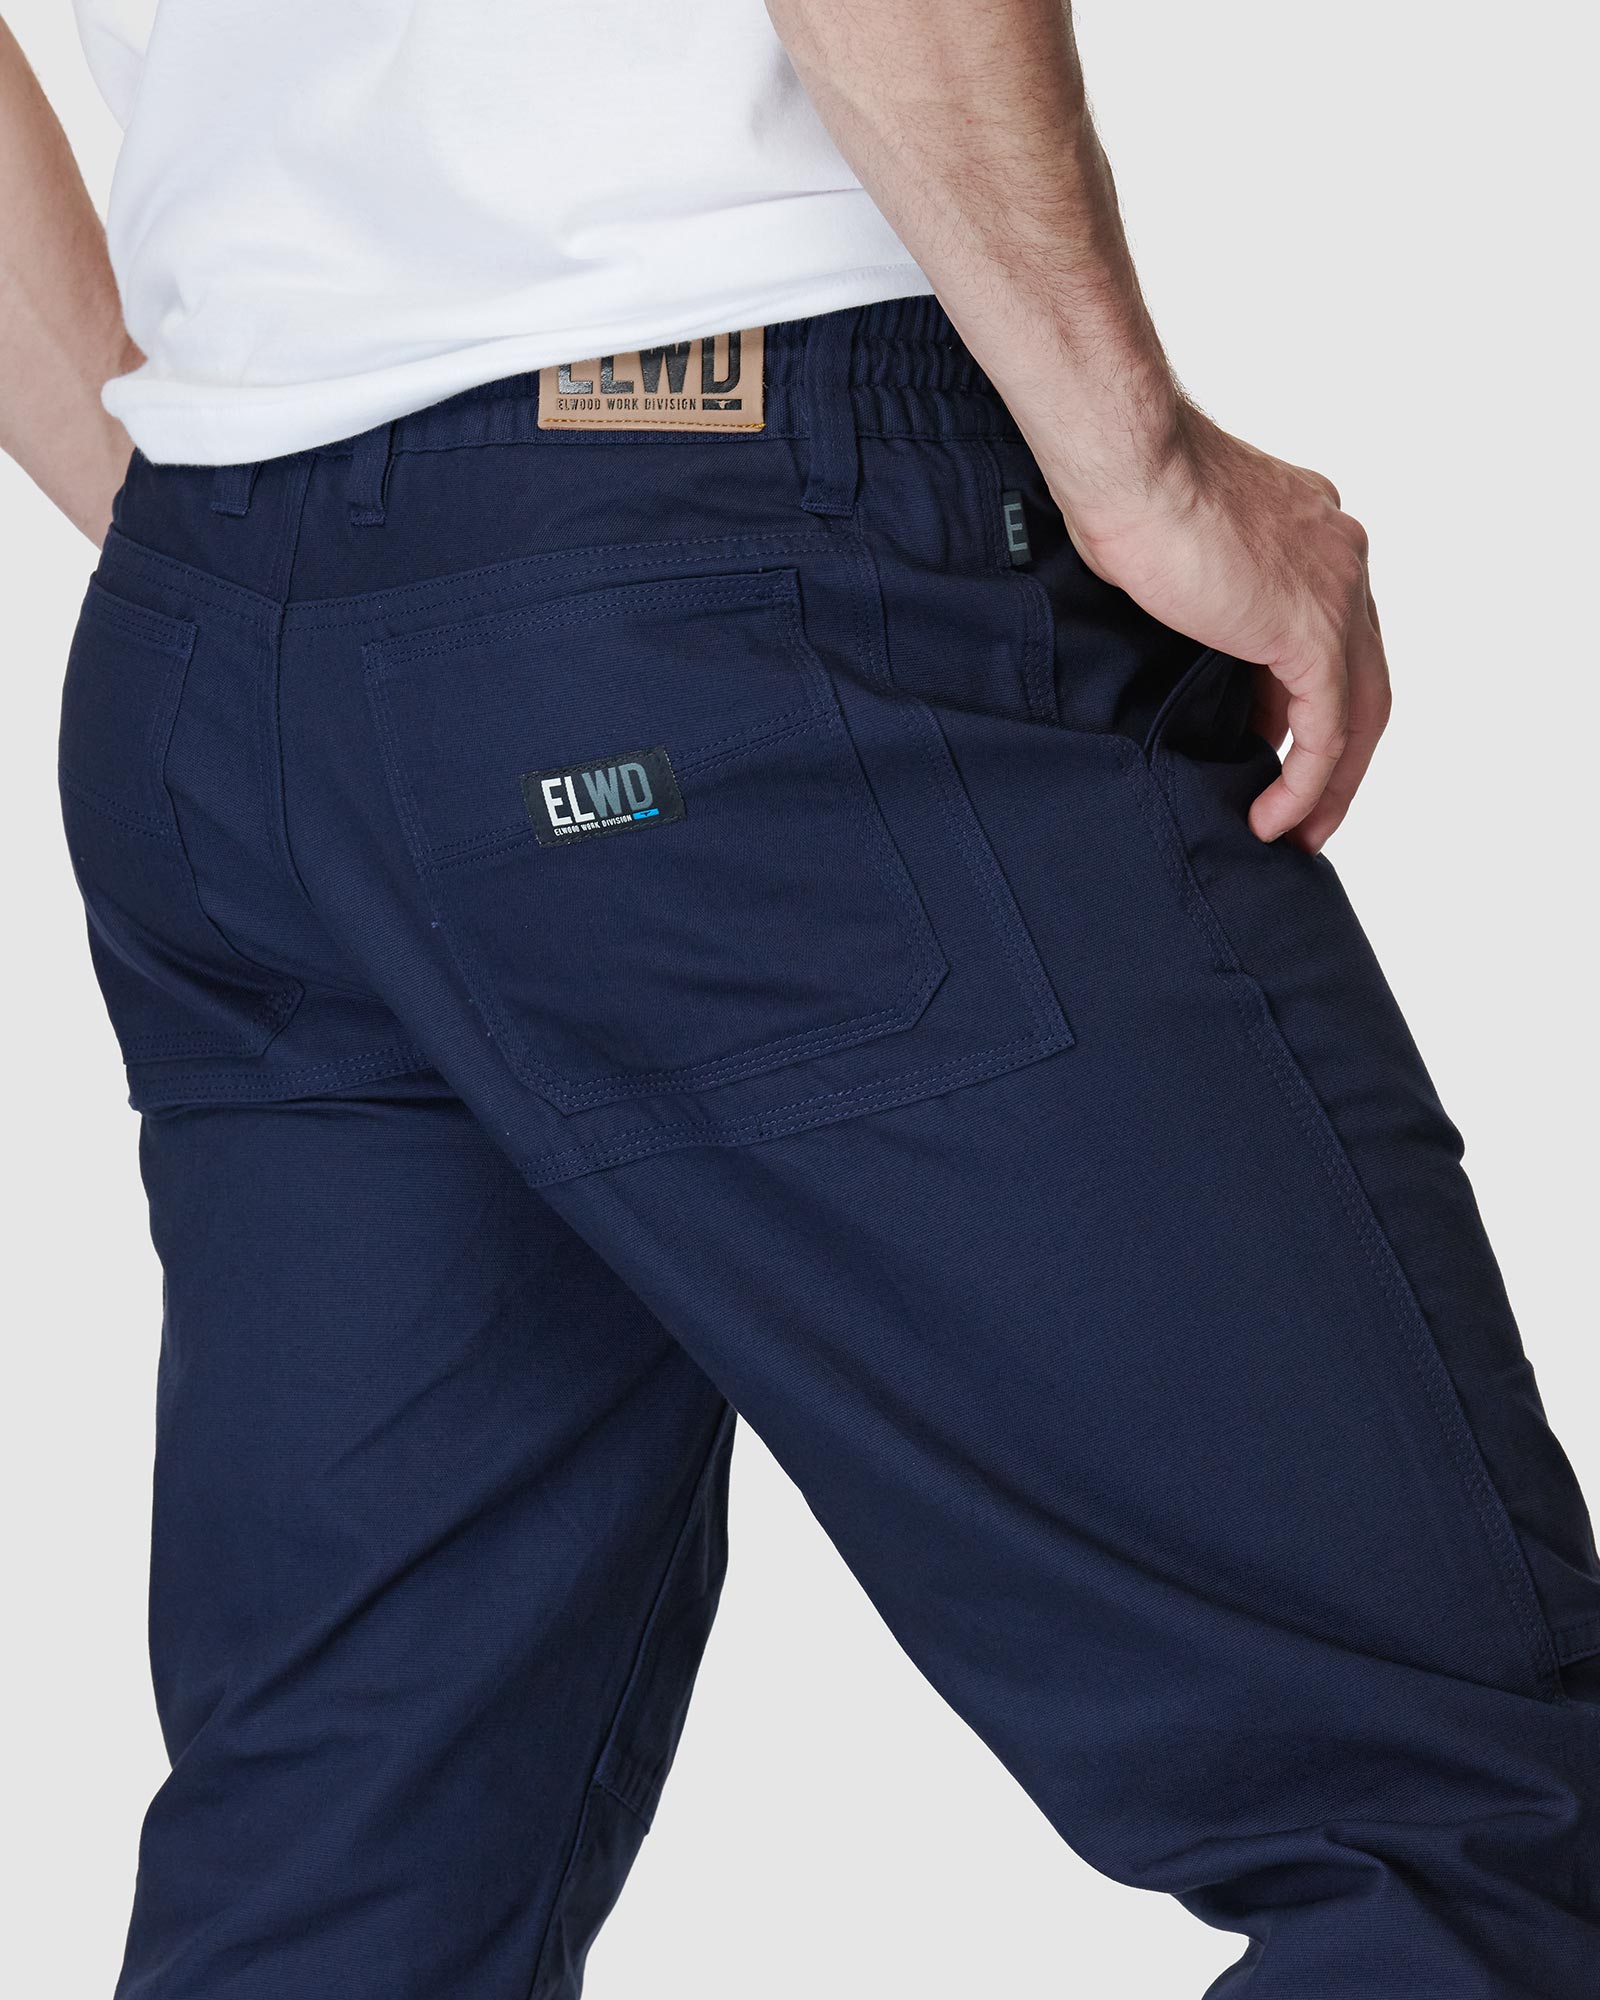 Elwood Men's Cuffed Pants, Workwear Pants